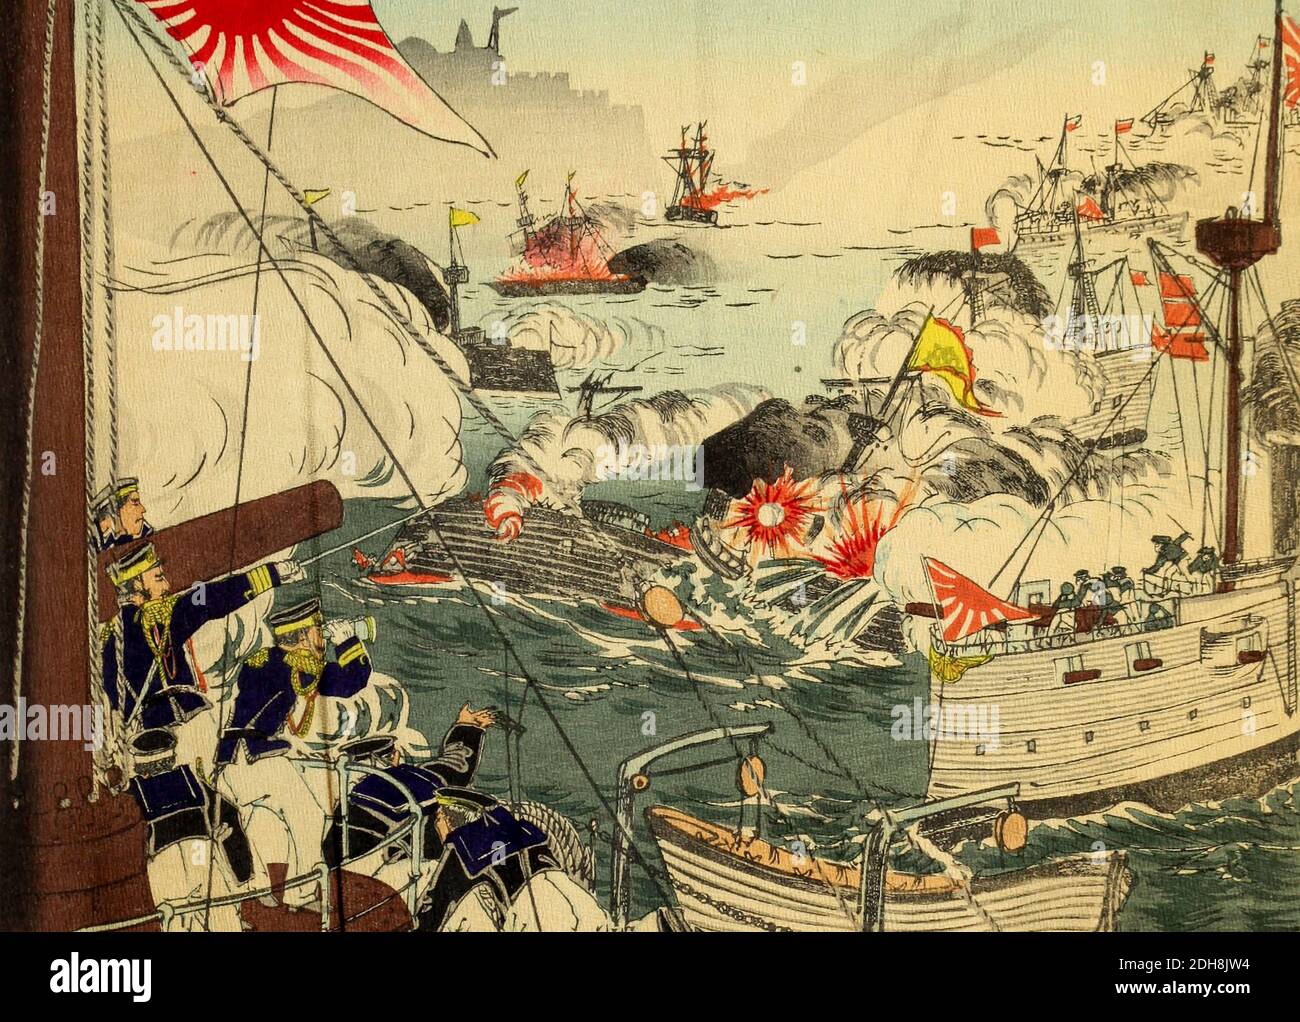 La bataille du fleuve Yalu fut le plus grand engagement naval de la première guerre sino-japonaise et eut lieu le 17 septembre 1894, le lendemain de la victoire japonaise à la bataille terrestre de Pyongyang. Il a impliqué des navires de la Marine impériale japonaise et de la flotte chinoise de Beiyang. La bataille est également connue sous différents noms : bataille de l'île de Haiyang, bataille de Dadonggou, bataille de la mer jaune et bataille de Yalu. Extrait du livre 'scènes de la guerre Japon-Chine' d'Inouye, Jukichi, 1862-1929; Yamamoto, Eiki, illustrateur. Publié à Tokyo en 1895 avec texte anglais. Le premier Wa sino-japonais Banque D'Images